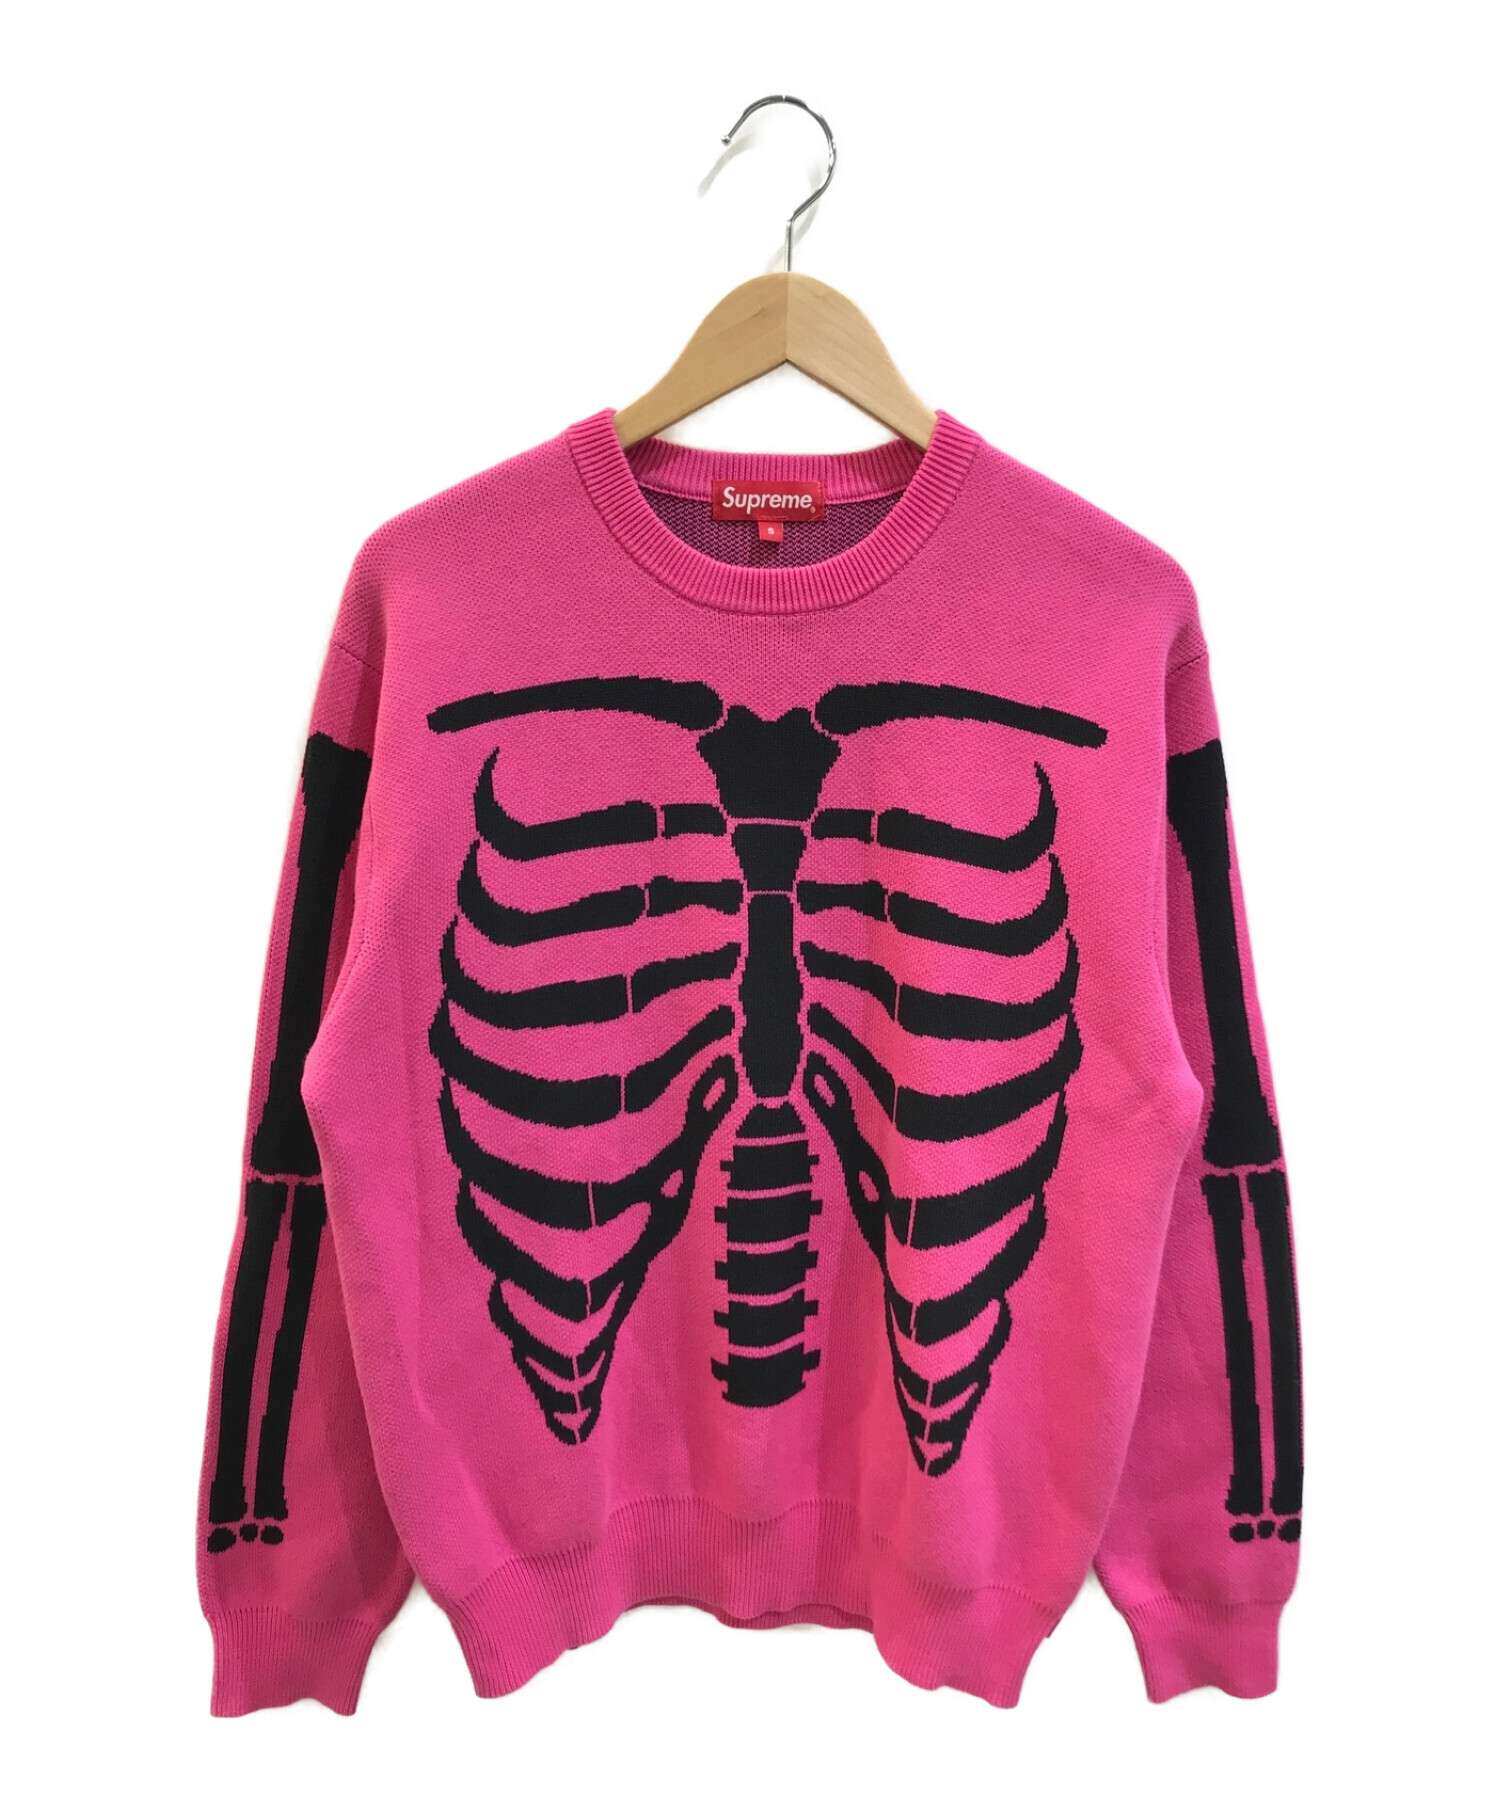 SUPREME Bones Sweater 17ss込16000は難しいでしょうか - ニット/セーター